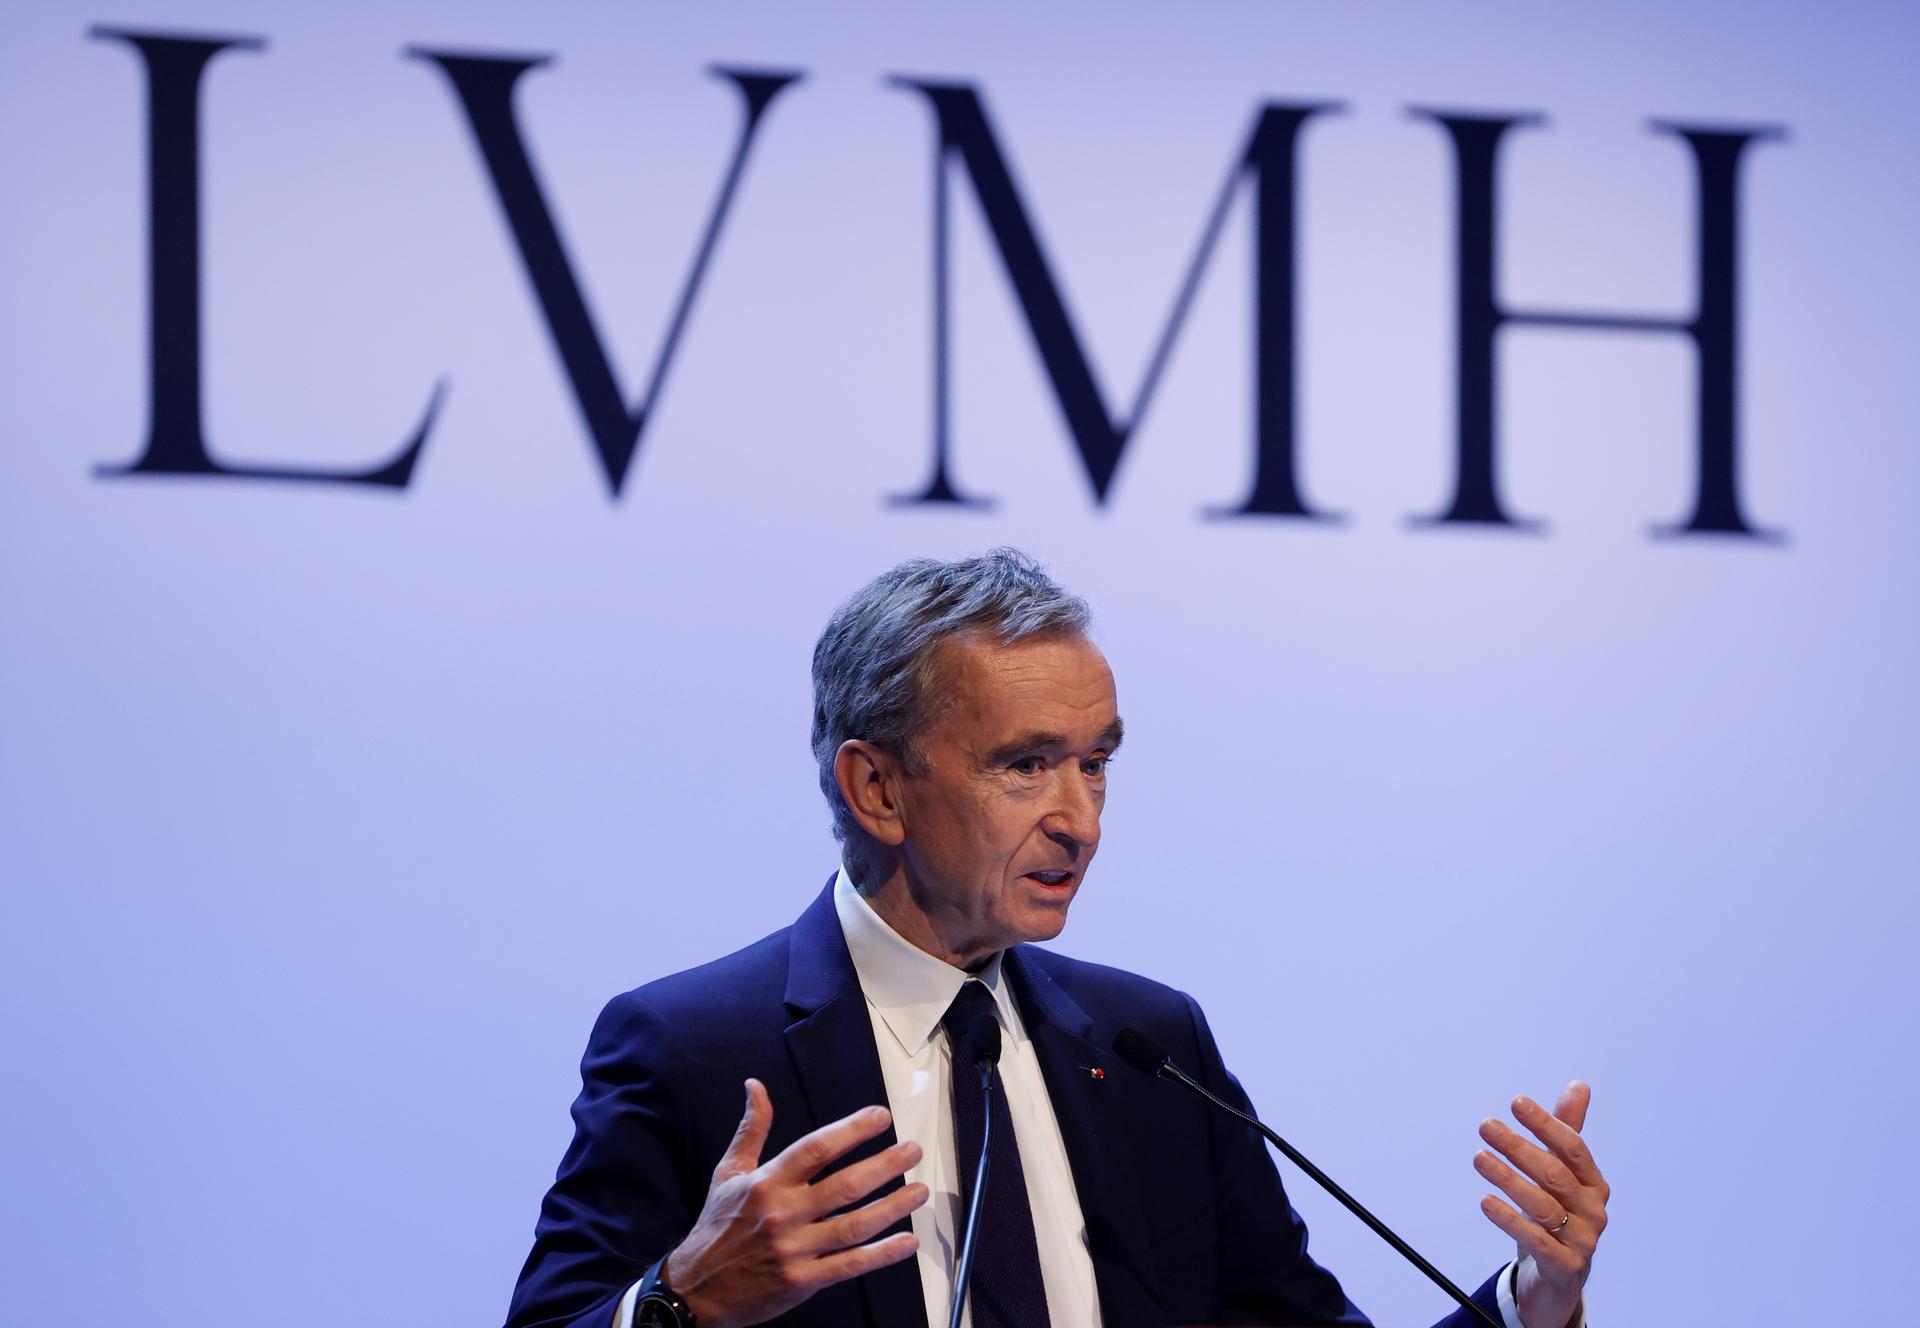 Billionaire LVMH boss Bernard Arnault takes Birkenstock stake